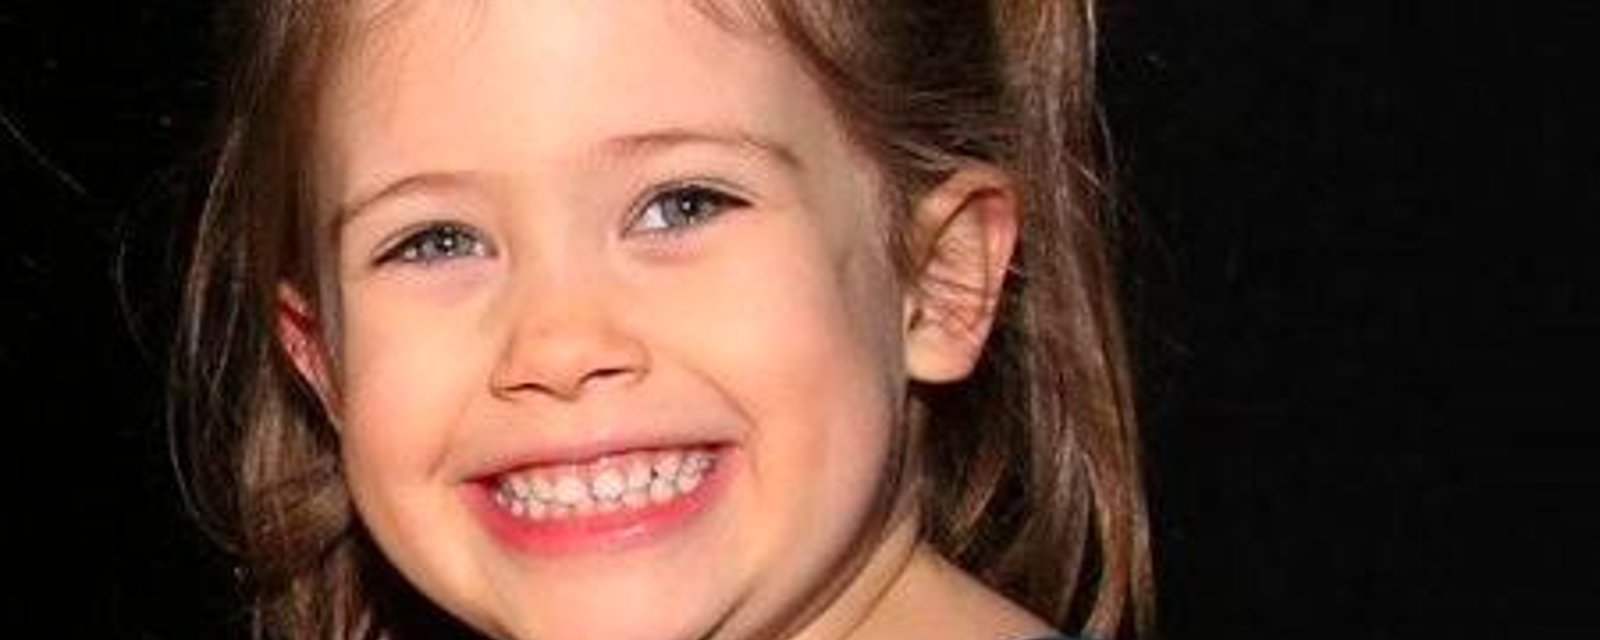 La fille de cinq ans d'une actrice connue meurt tragiquement sous ses yeux